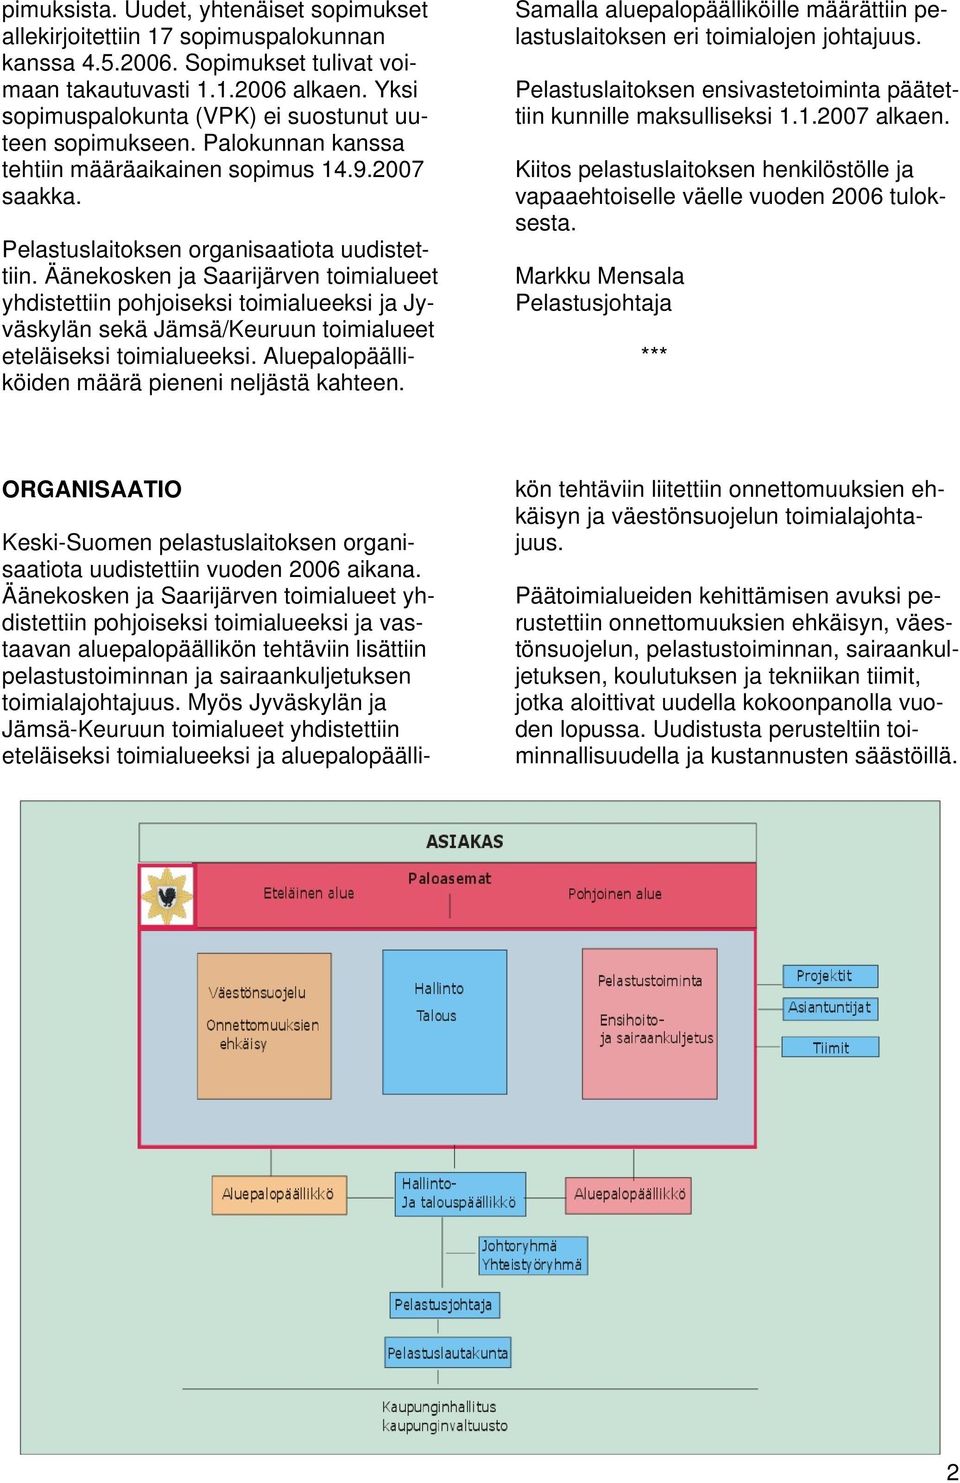 Äänekosken ja Saarijärven toimialueet yhdistettiin pohjoiseksi toimialueeksi ja Jyväskylän sekä Jämsä/Keuruun toimialueet eteläiseksi toimialueeksi.